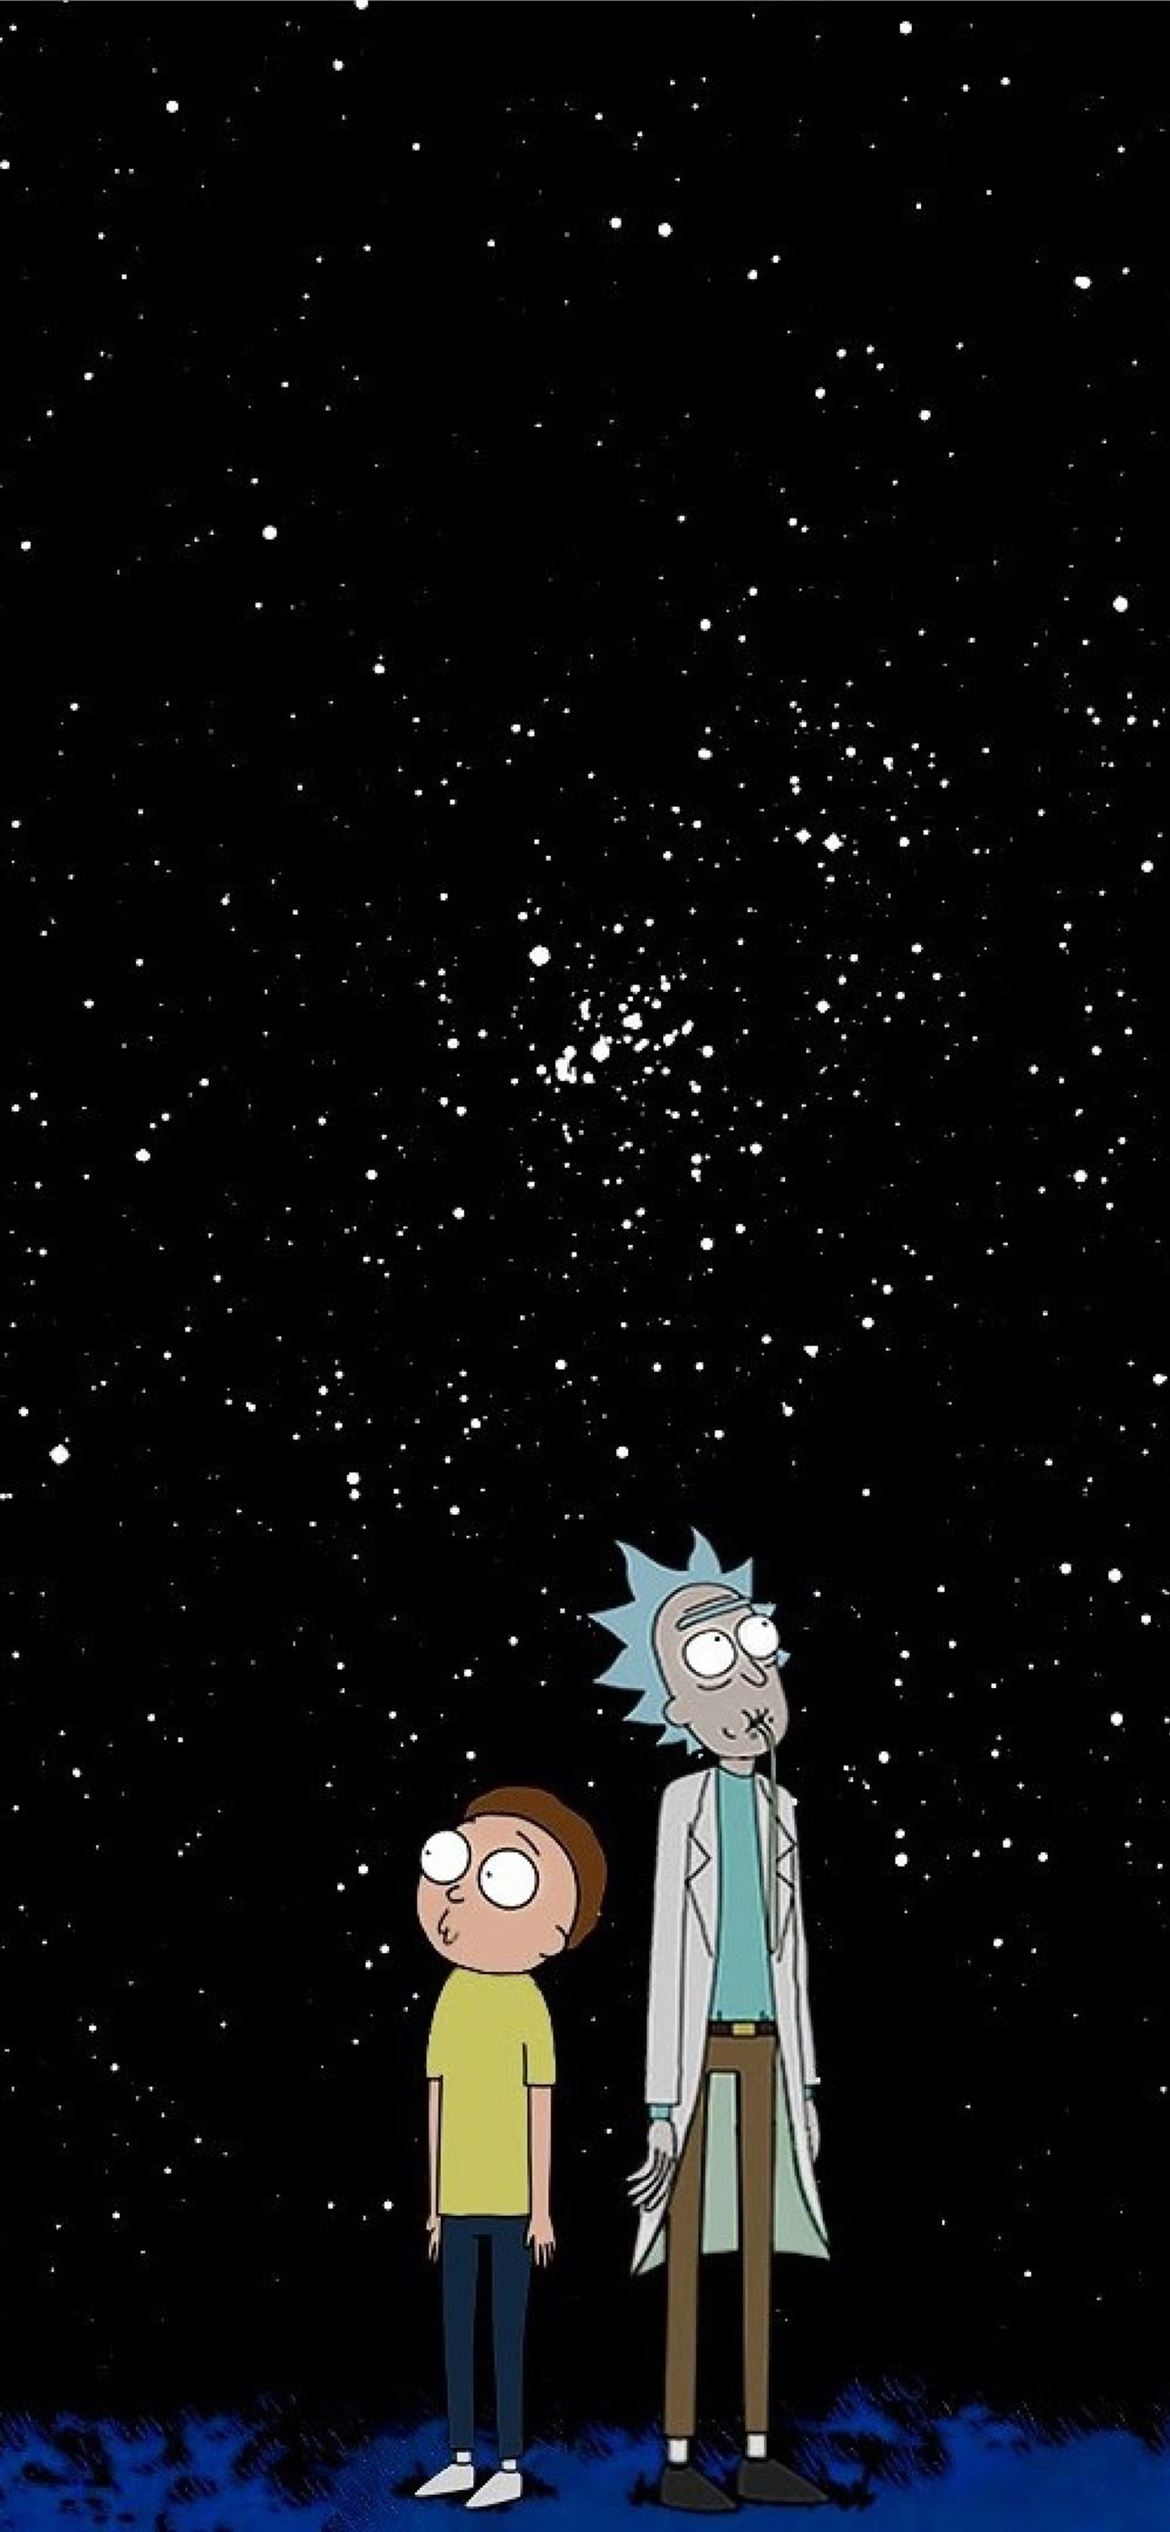 Rick and Morty đã trở thành một trong những bộ phim hoạt hình được yêu thích nhất của thế giới. Và giờ đây, bạn có thể tắt màn hình tĩnh của iPhone và thay thế nó bằng những hình nền độc đáo của Rick and Morty iPhone Wallpaper, để bộ đôi bất đắc dĩ này luôn đồng hành cùng bạn trên điện thoại.